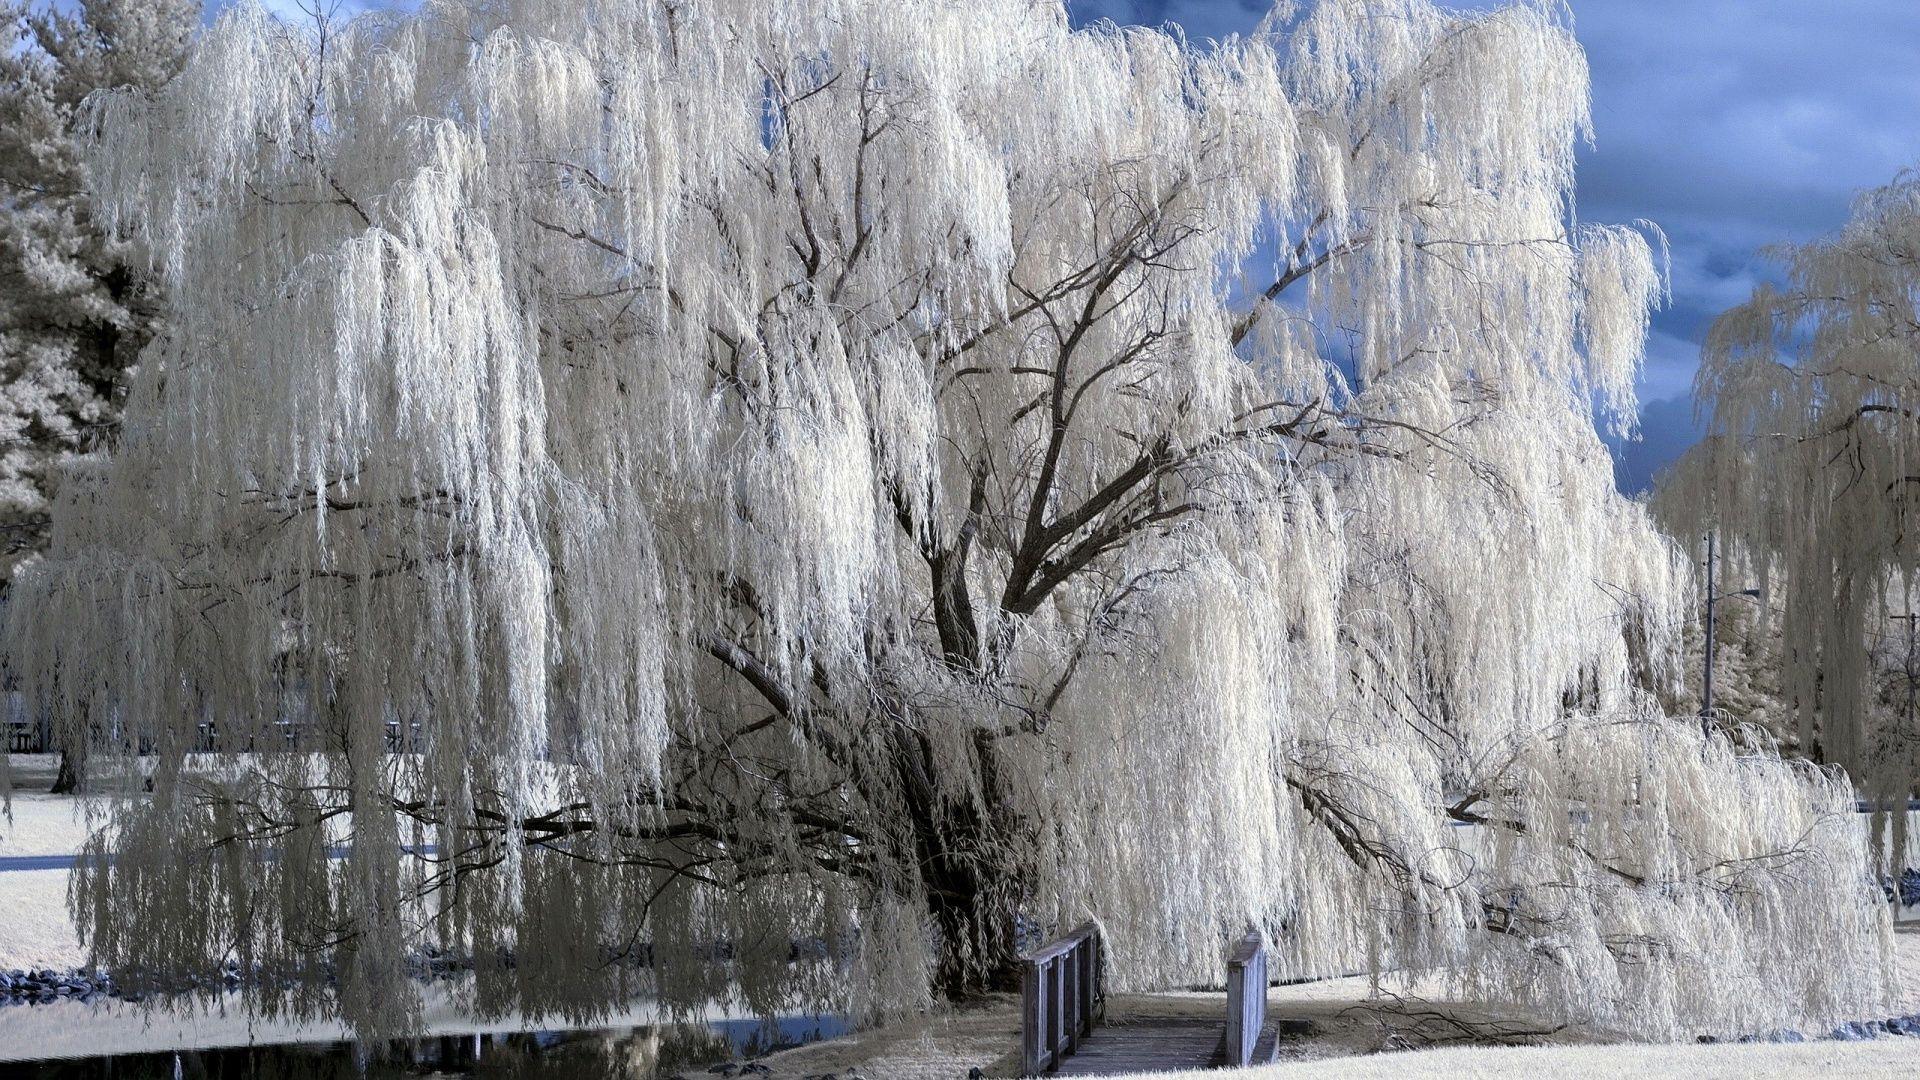 A tree in winter Wallpaper